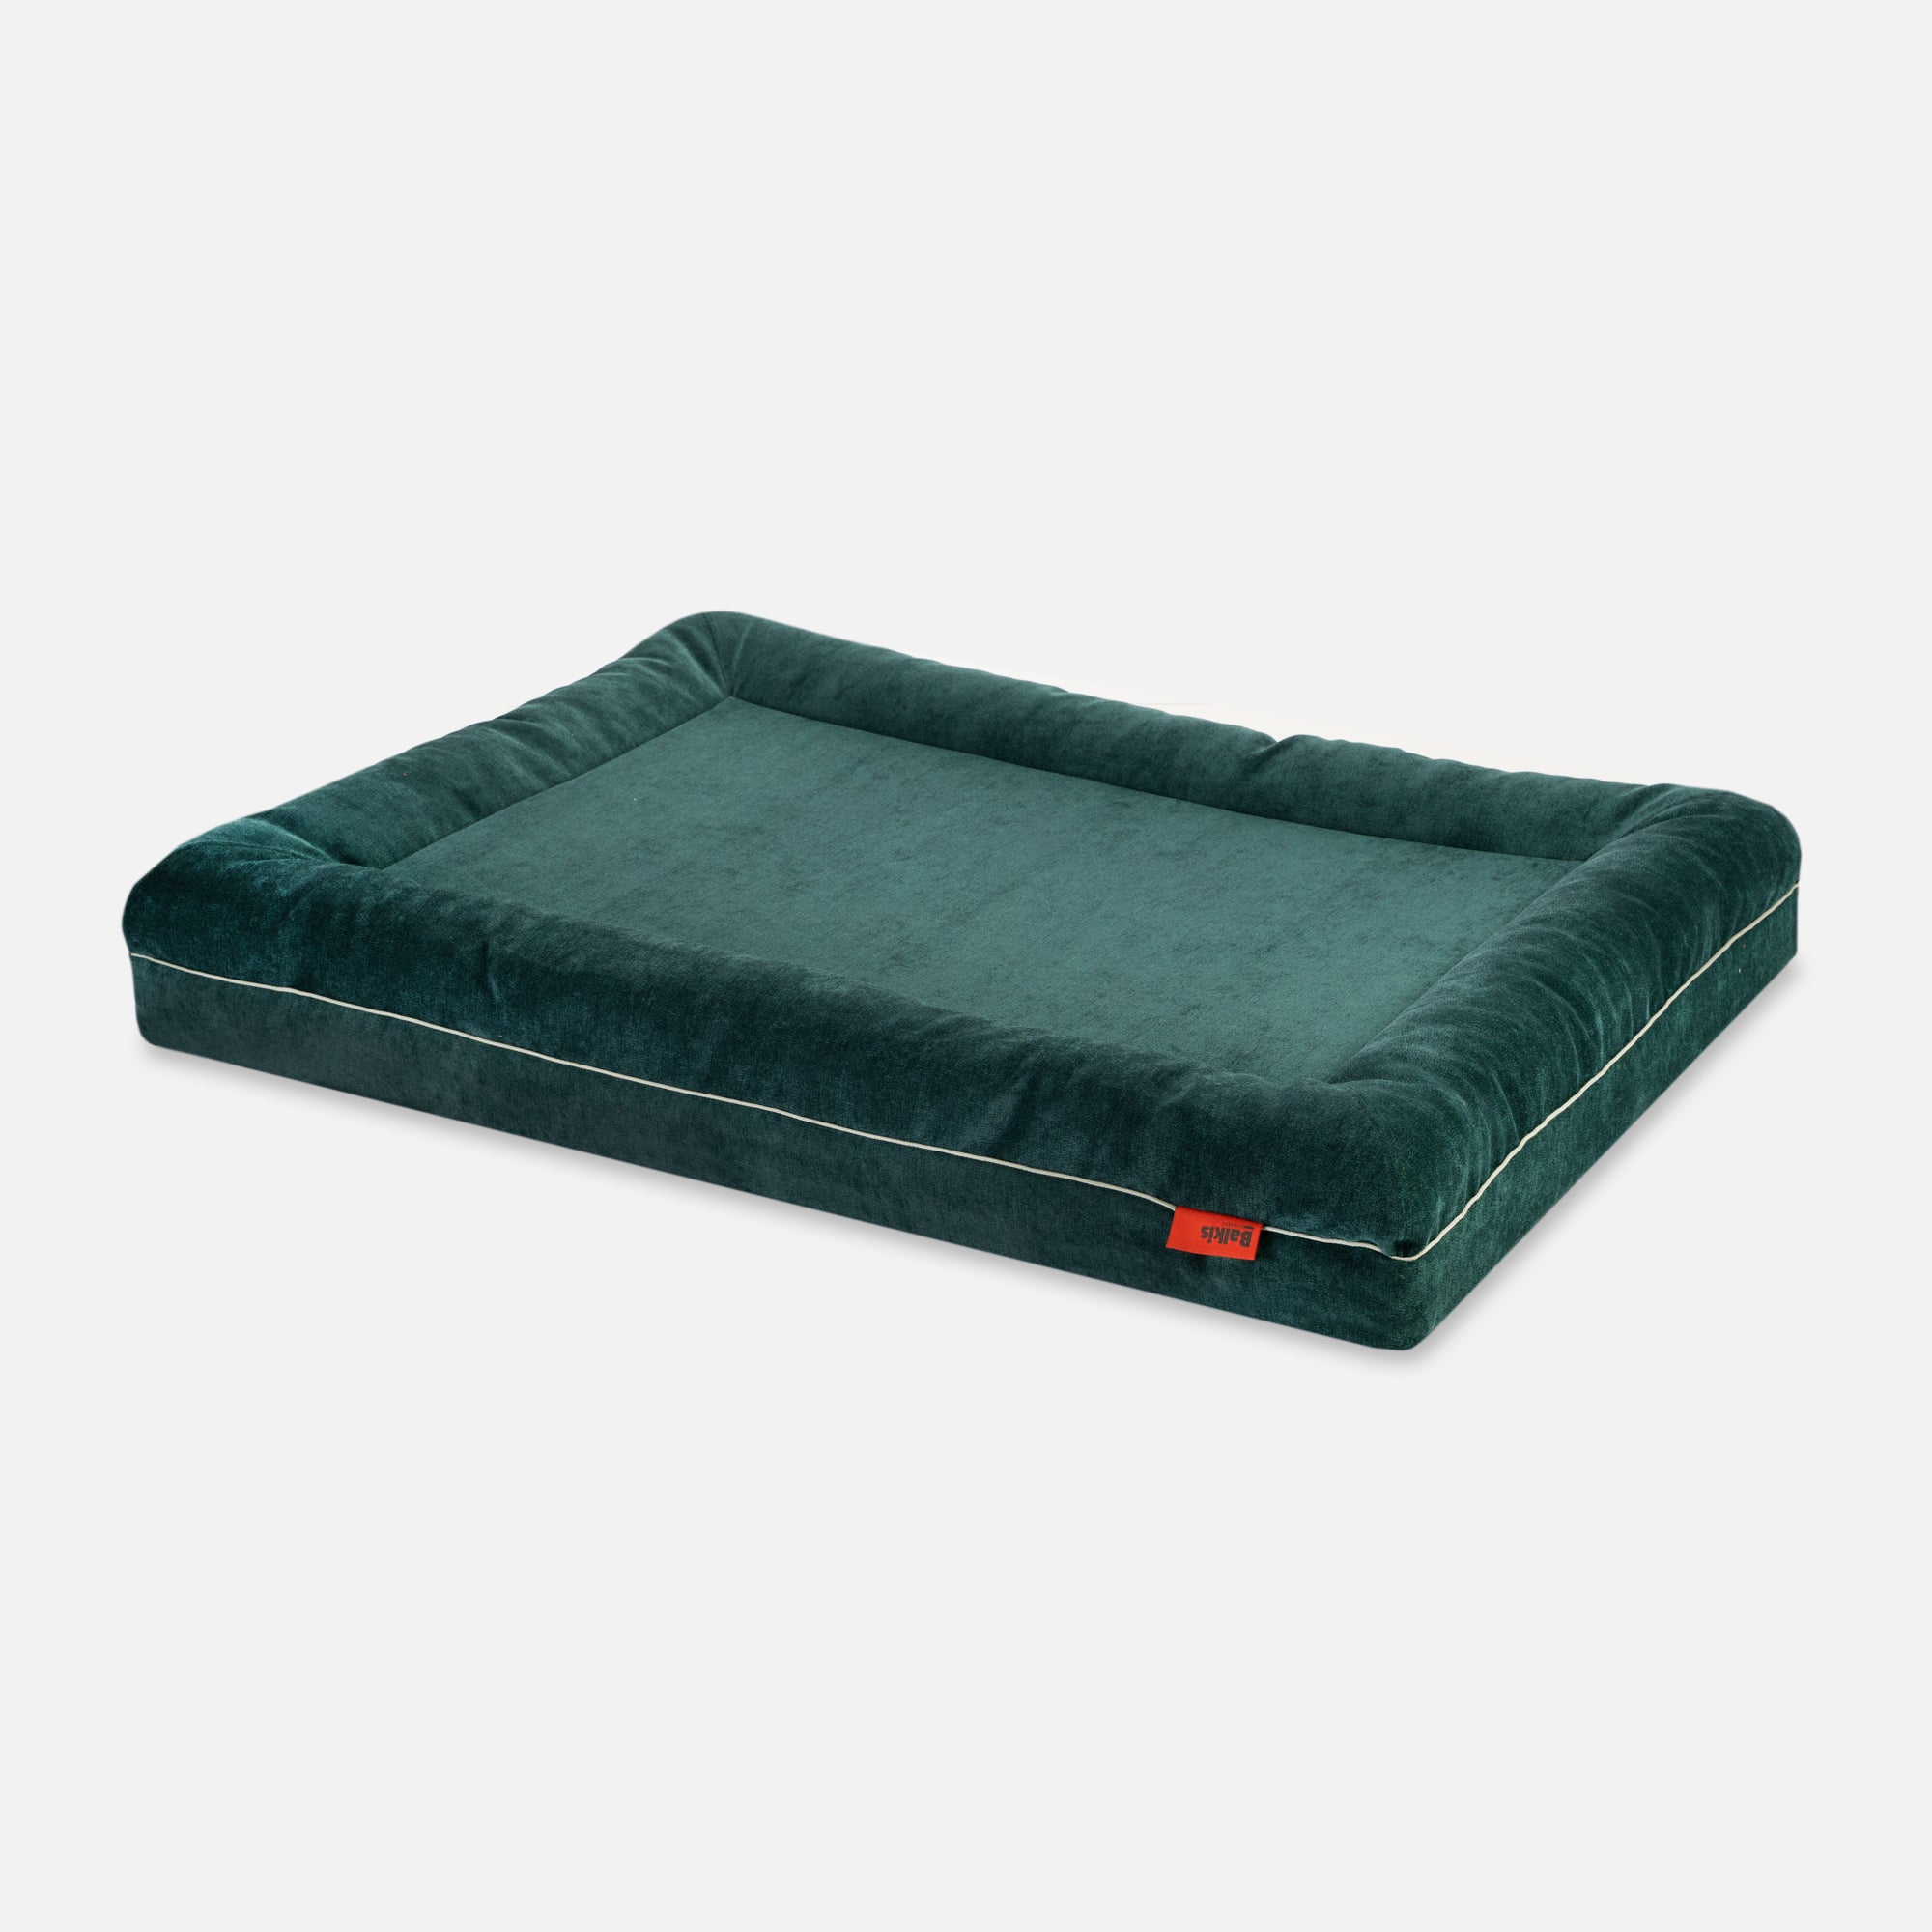 Dog bed Divan - Emerald